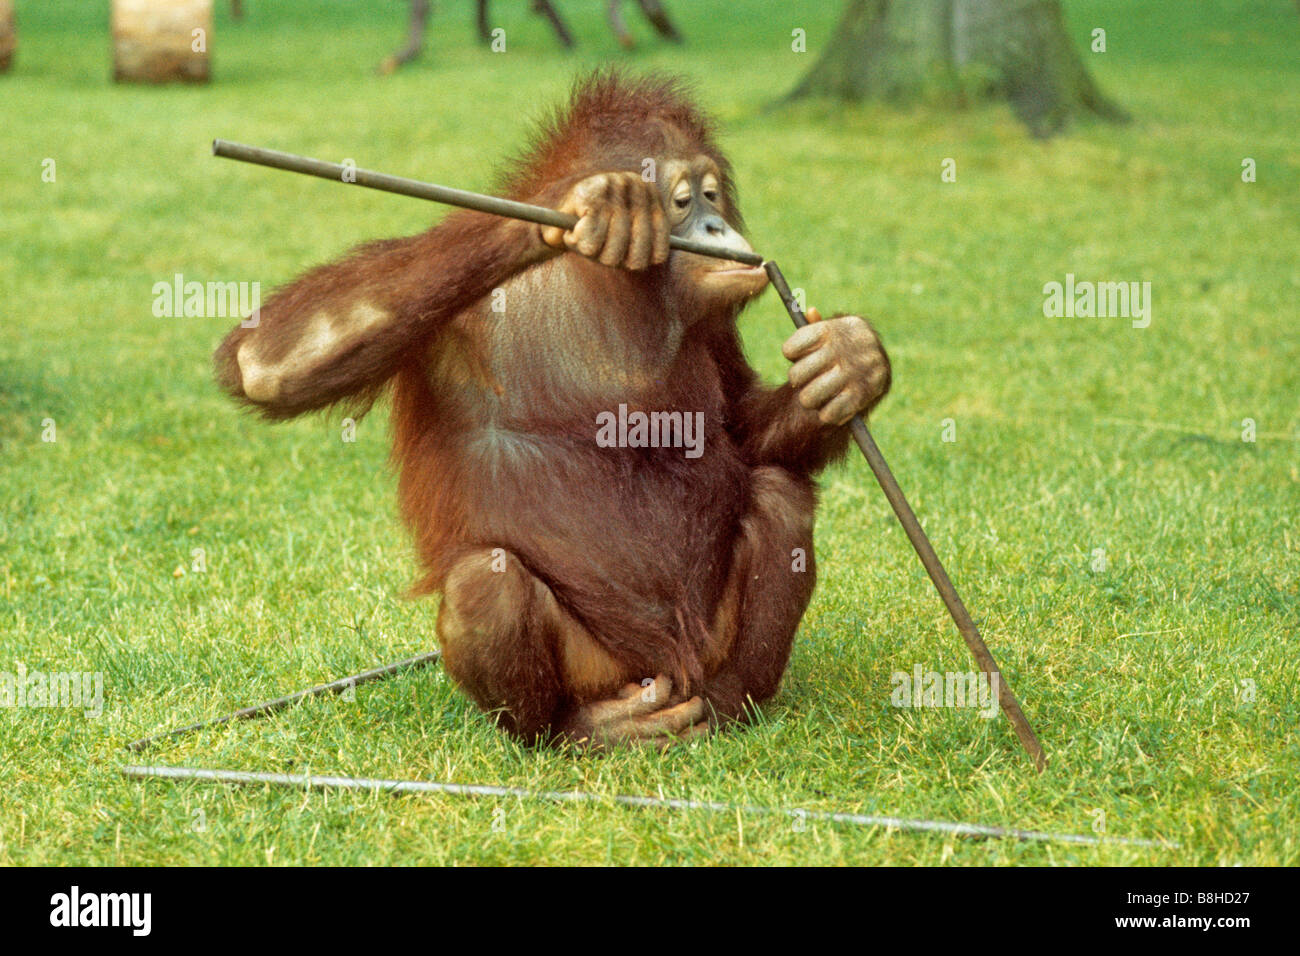 El orangután (Pongo pygmaeus), Buschi teniendo una prueba de inteligencia en Osnabrueck Zoo Foto de stock